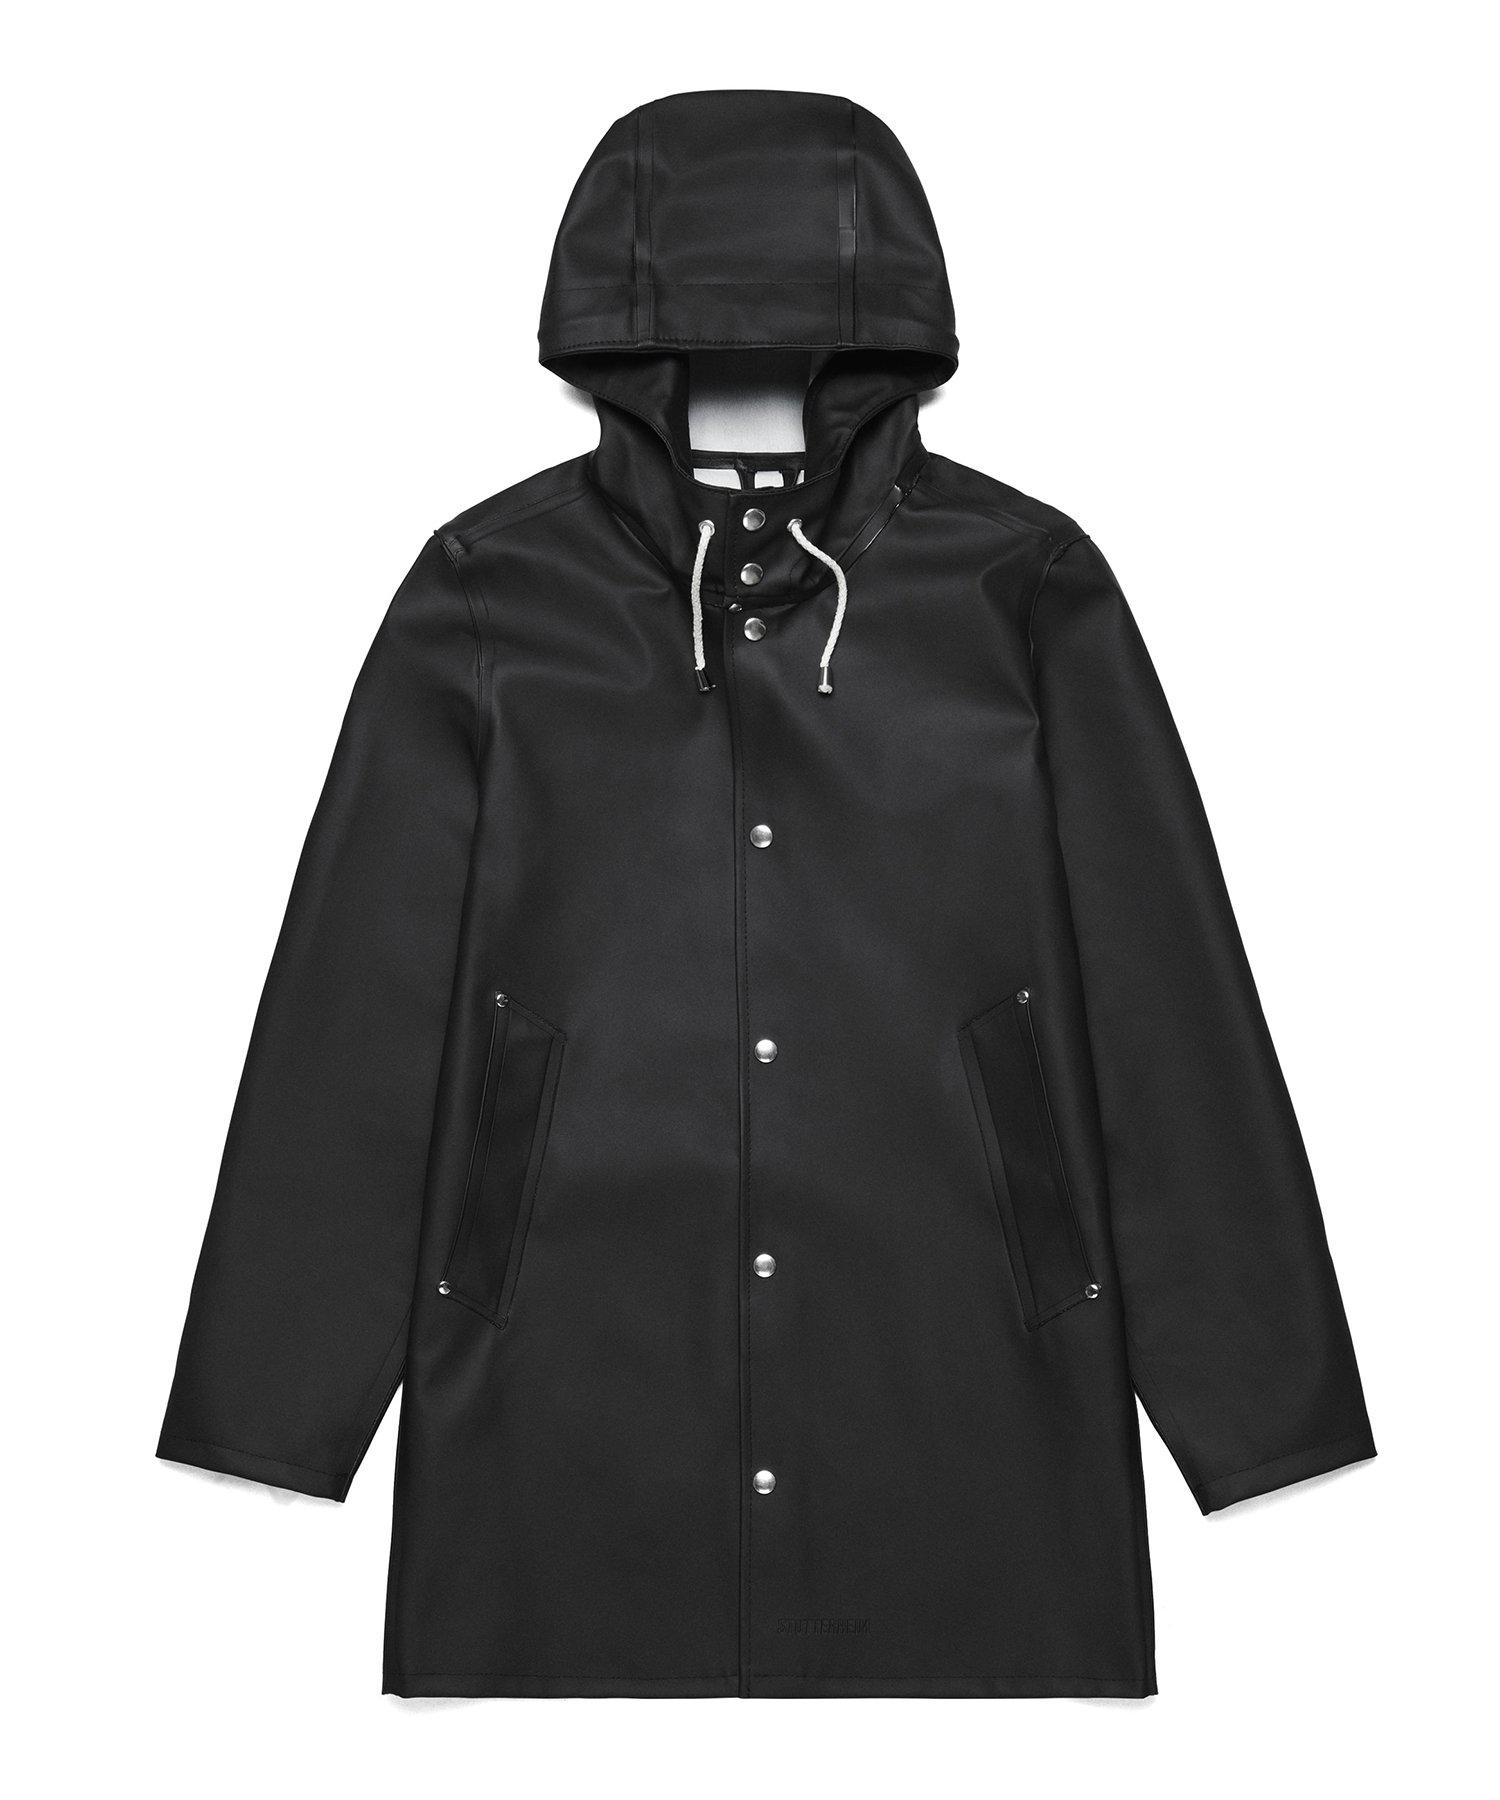 Stutterheim Cotton Stockholm Basic Raincoat In Black for Men - Lyst